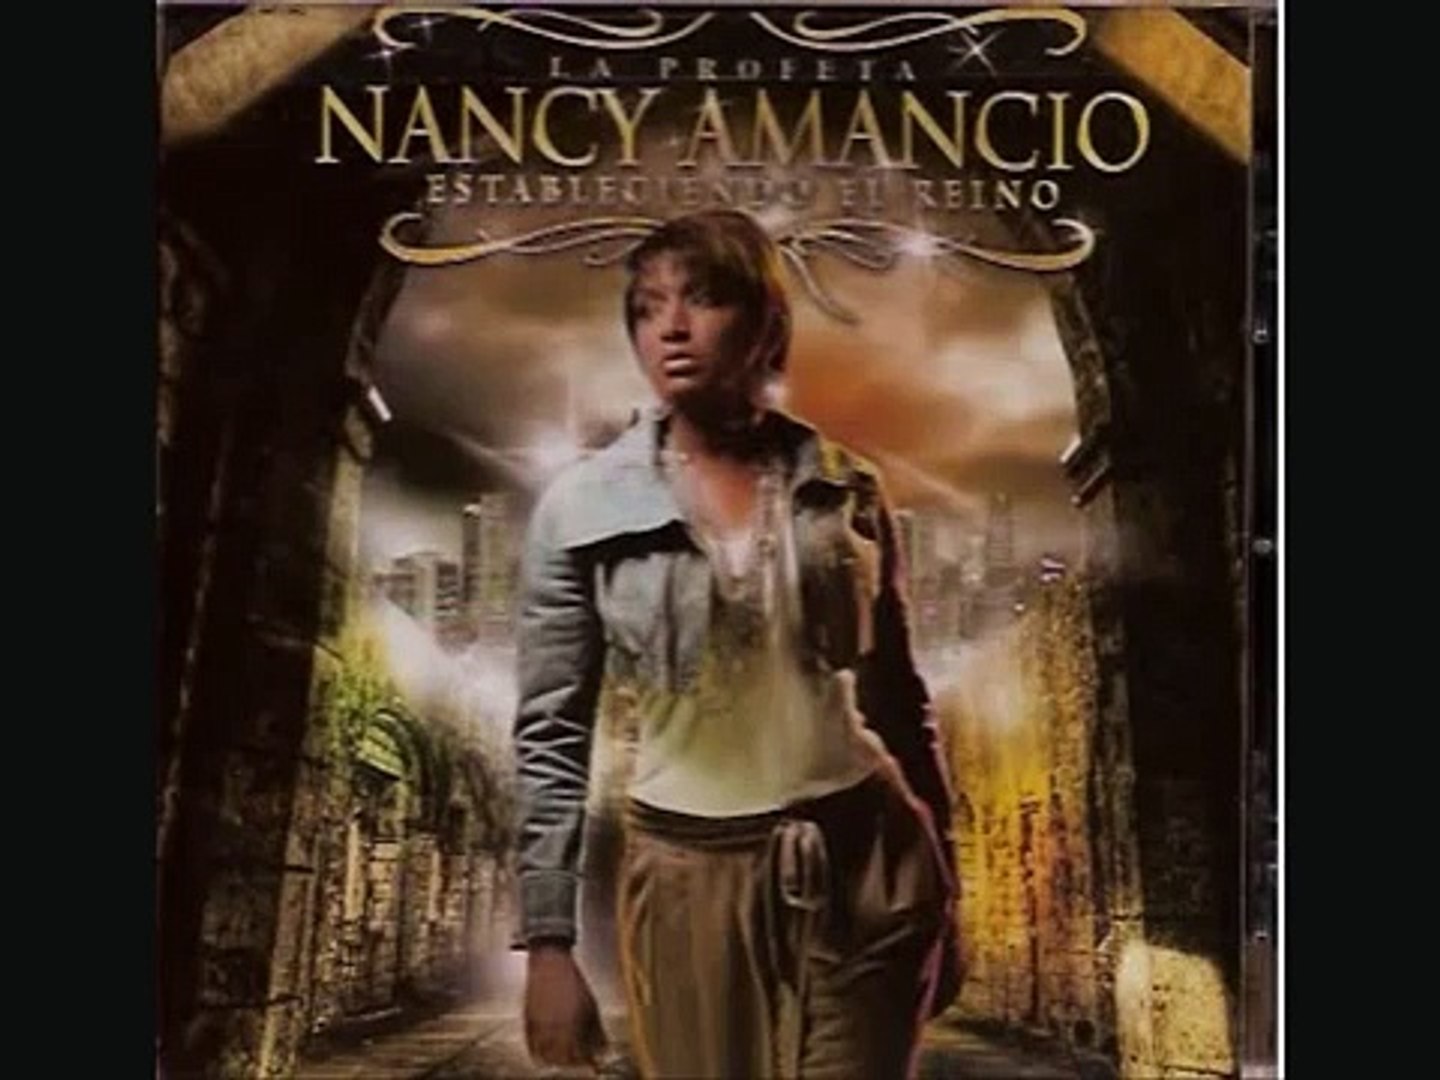 NANCY AMANCIO - ESTA ES LA FE - video Dailymotion